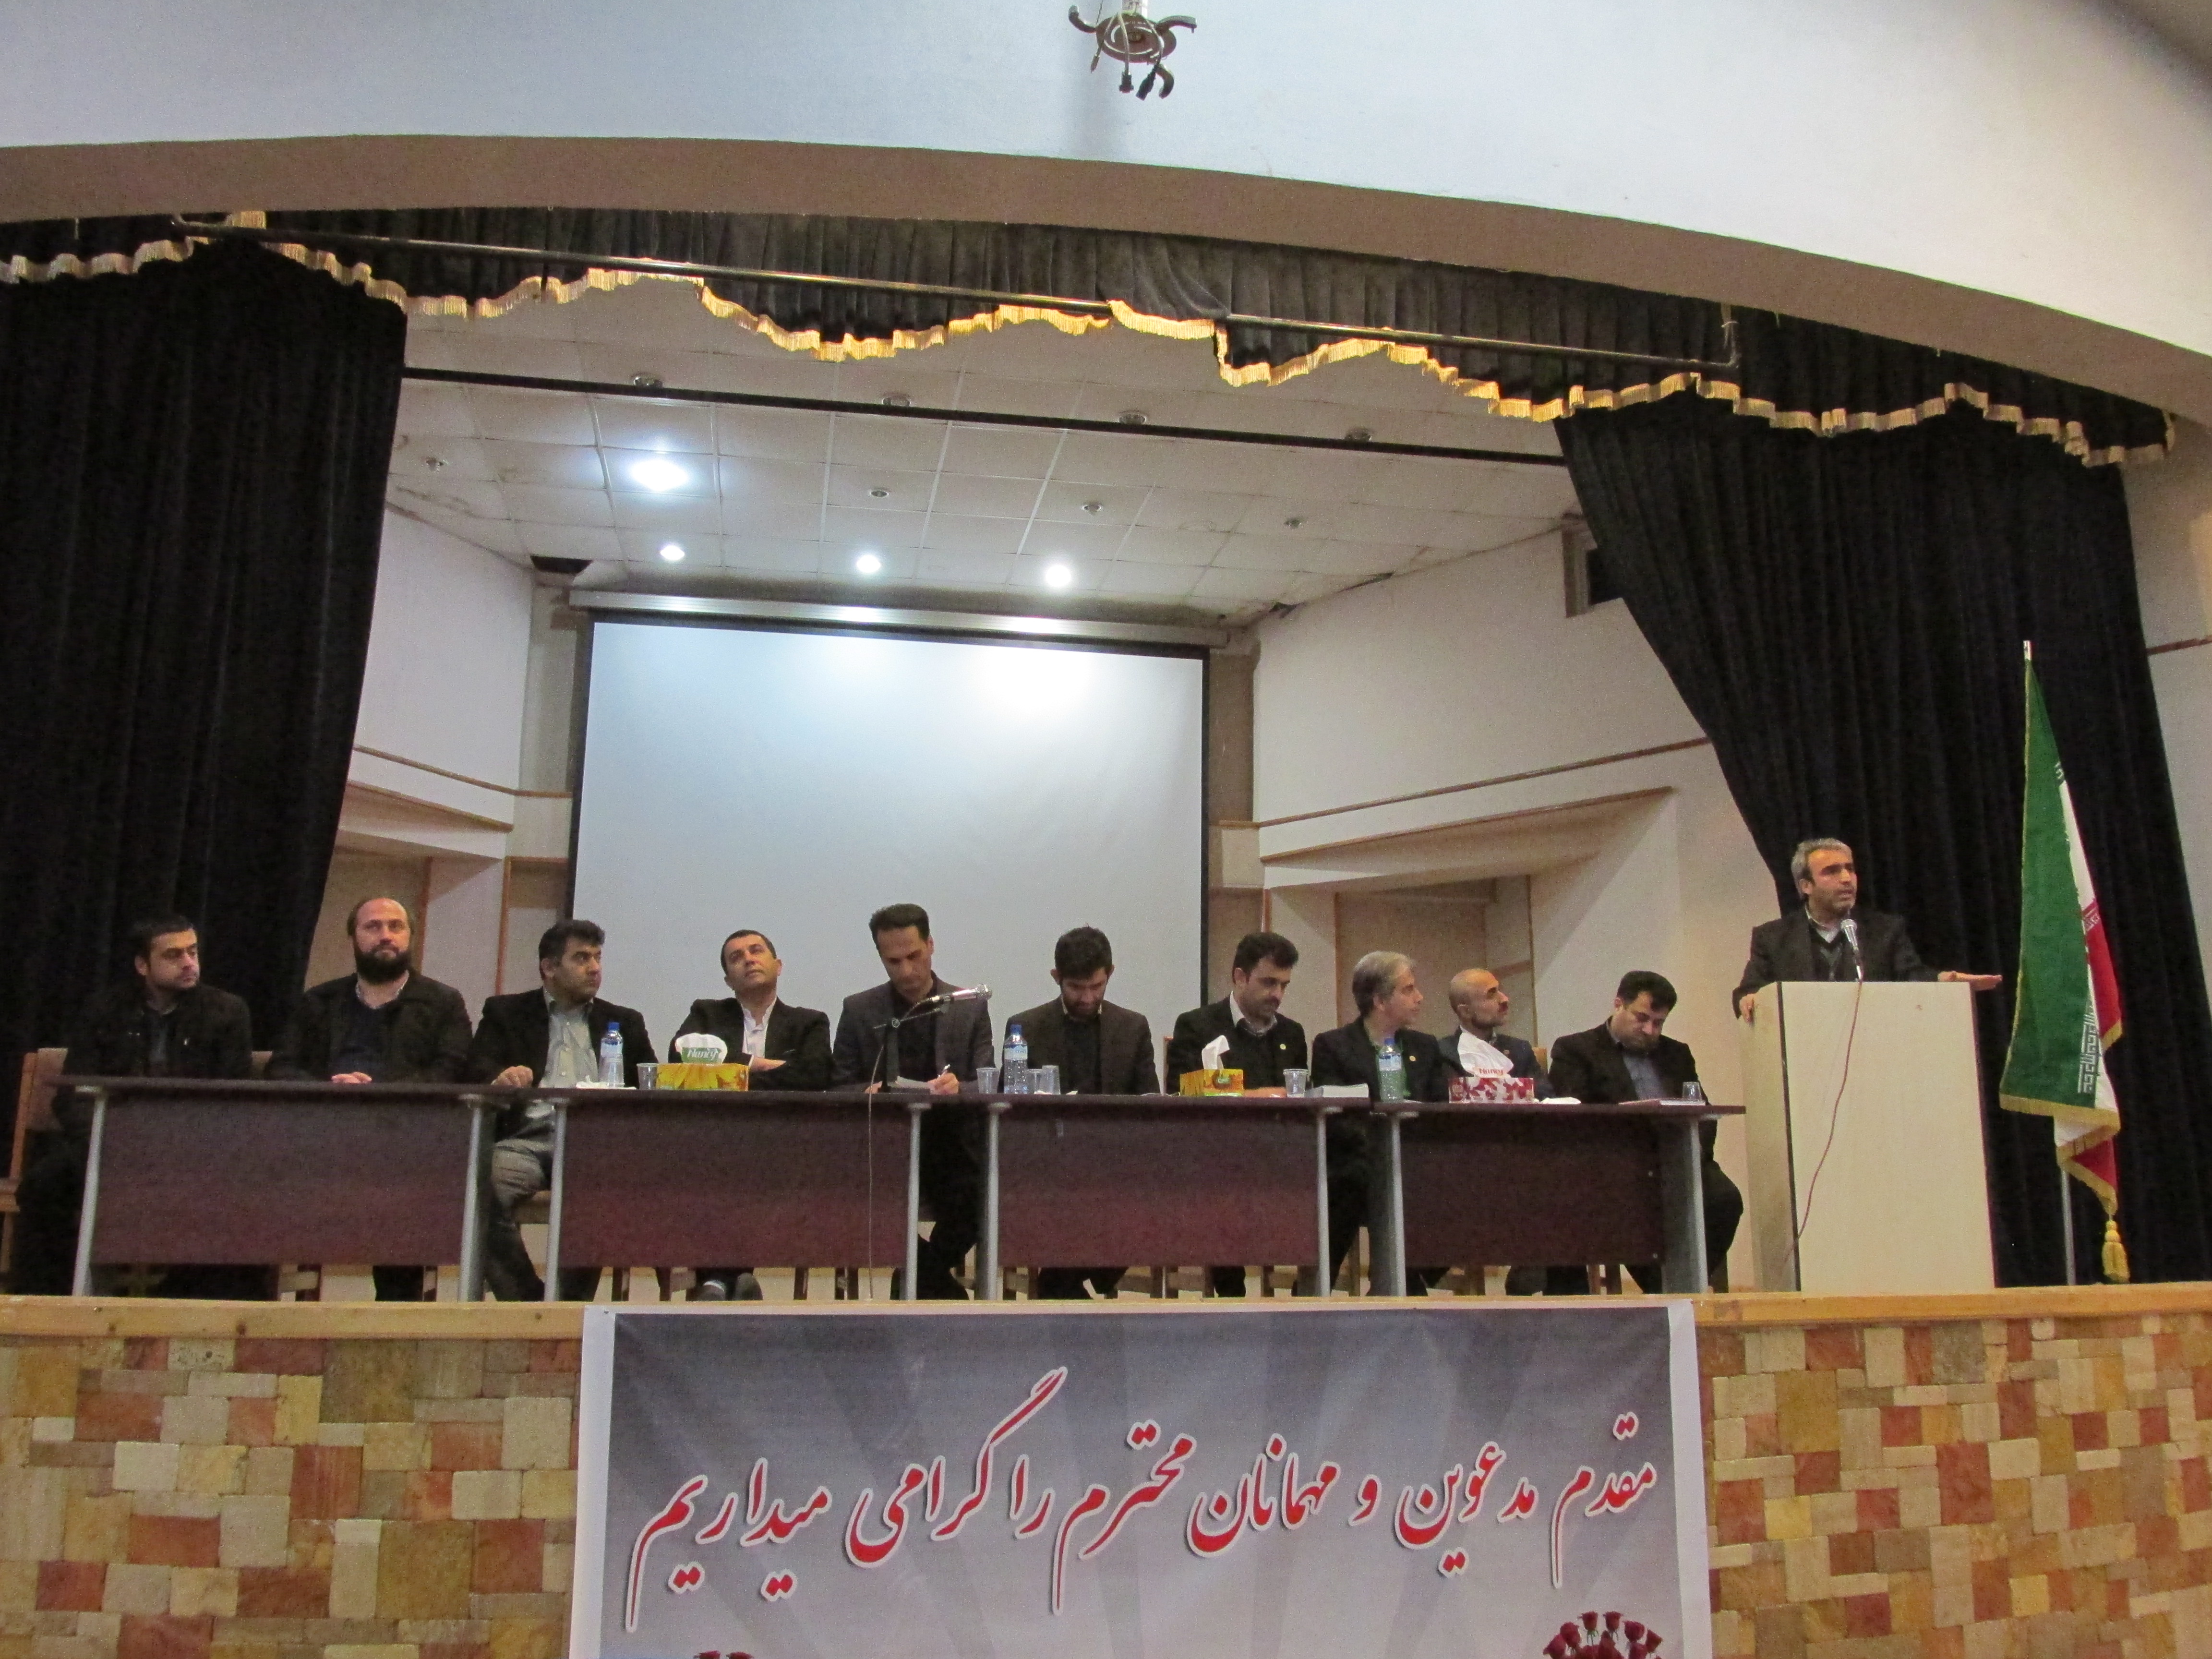 جلسه مشترك بنياد مسكن و سازمان نظام فني كارداني مازندران در نوشهر برگزار شد
